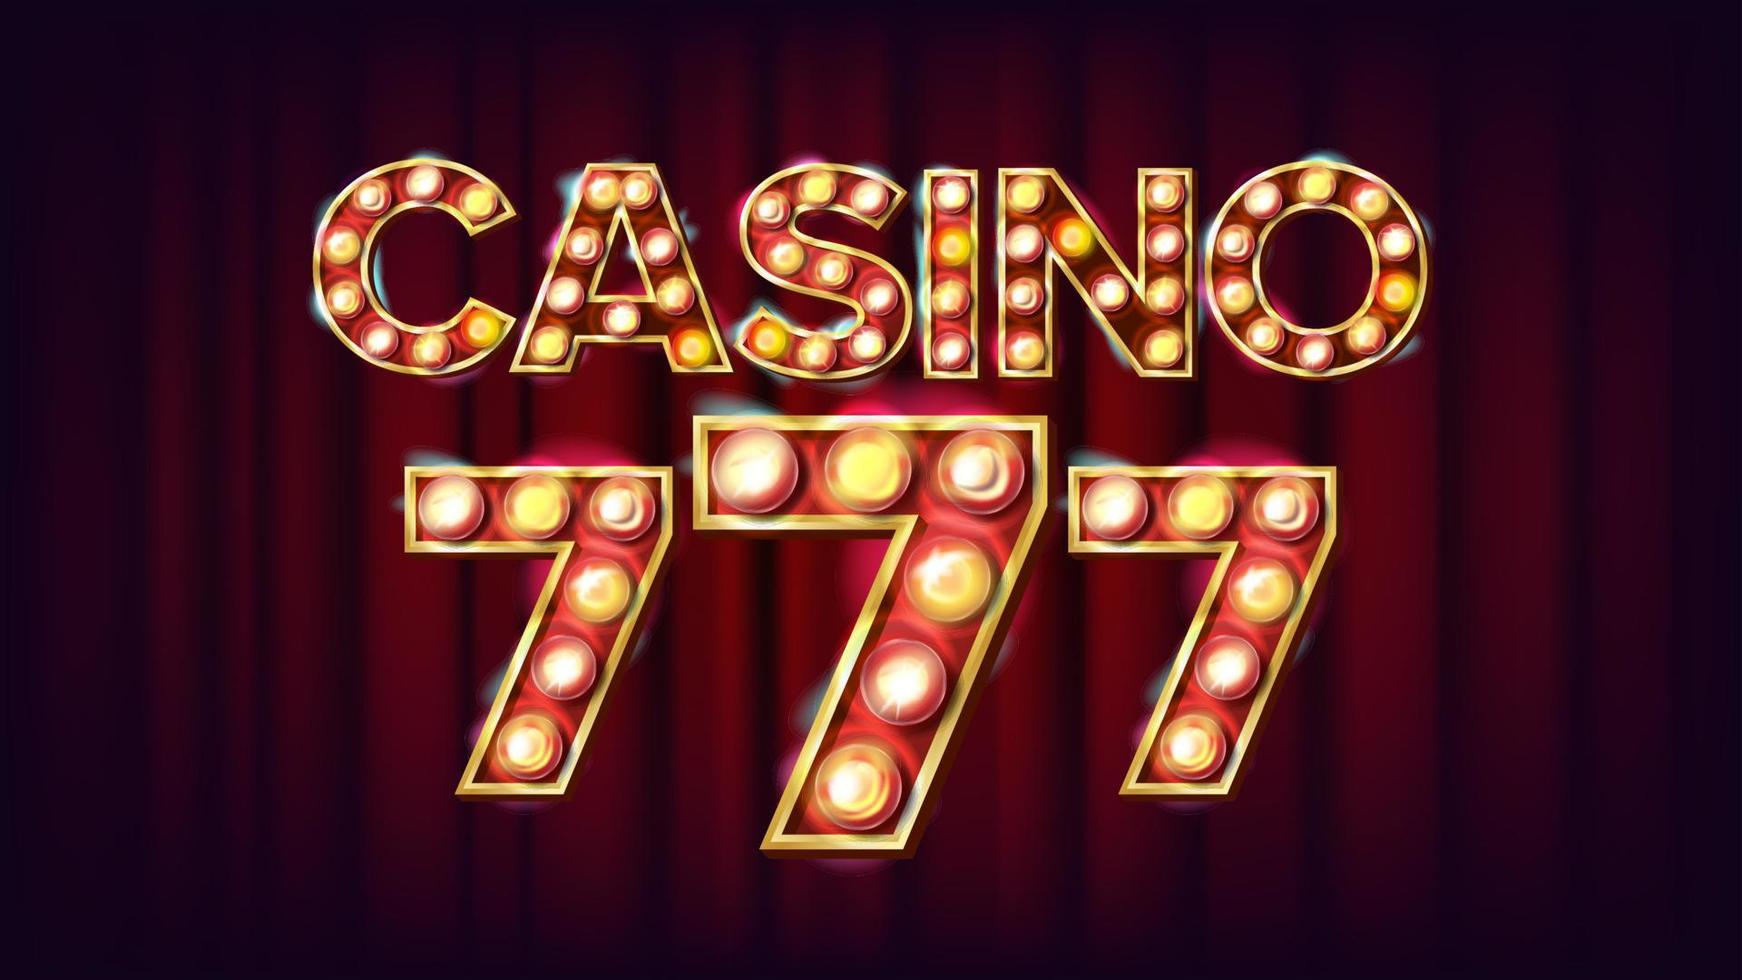 casino 777 banier vector. casino wijnoogst stijl verlichte licht. Lucky illustratie vector